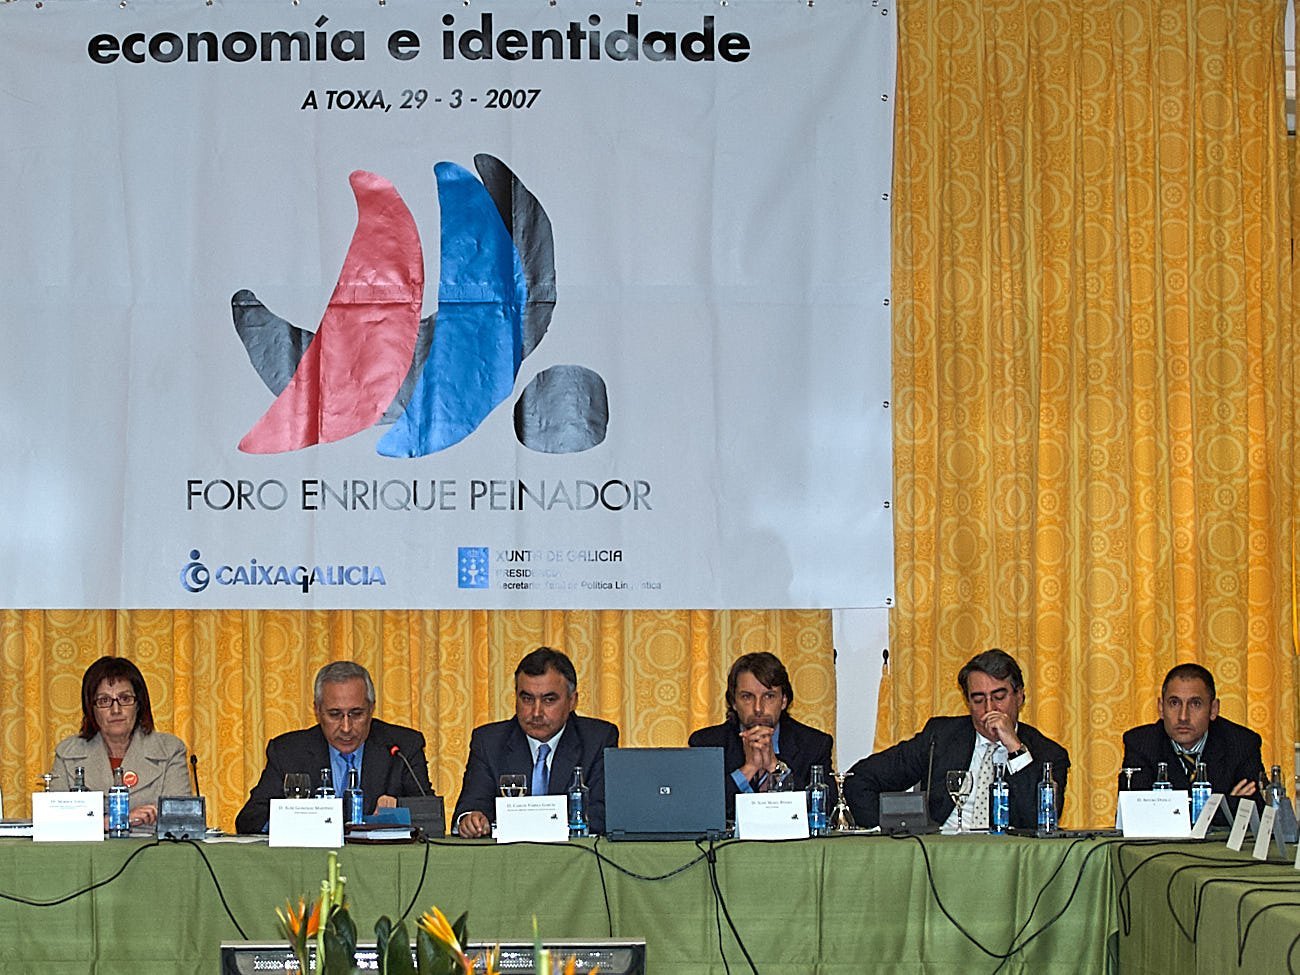 Foro Economía e Identidade celebrado na Toxa - Foro Peinador 20/02/2009